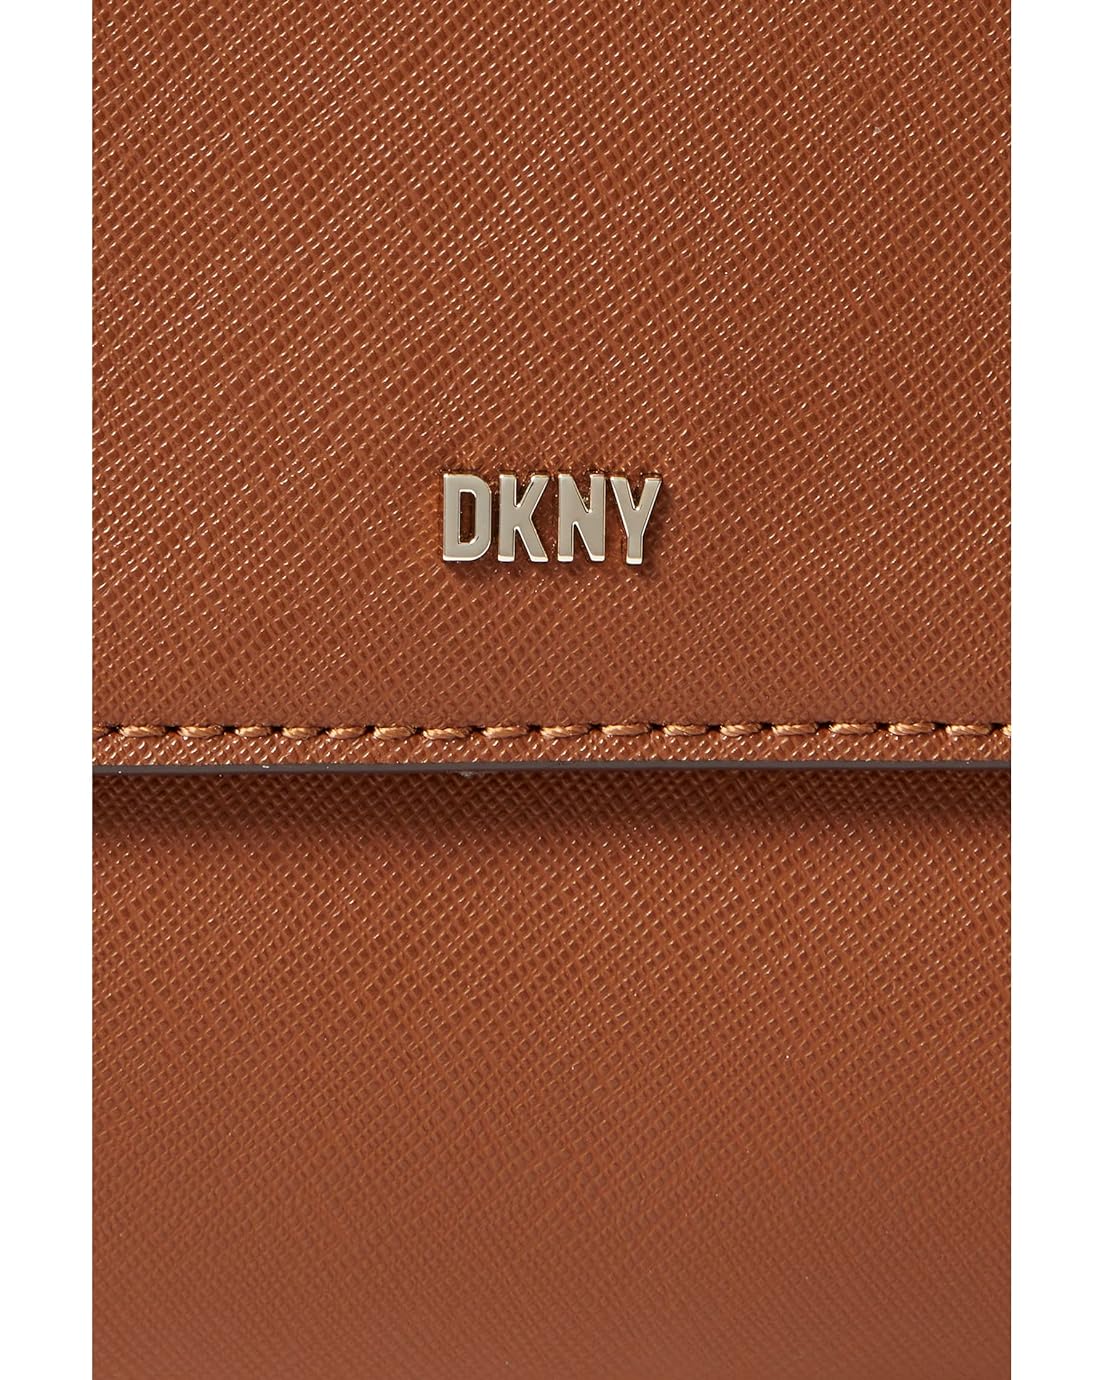 DKNY DKNY Sina Medium Flap Shoulder